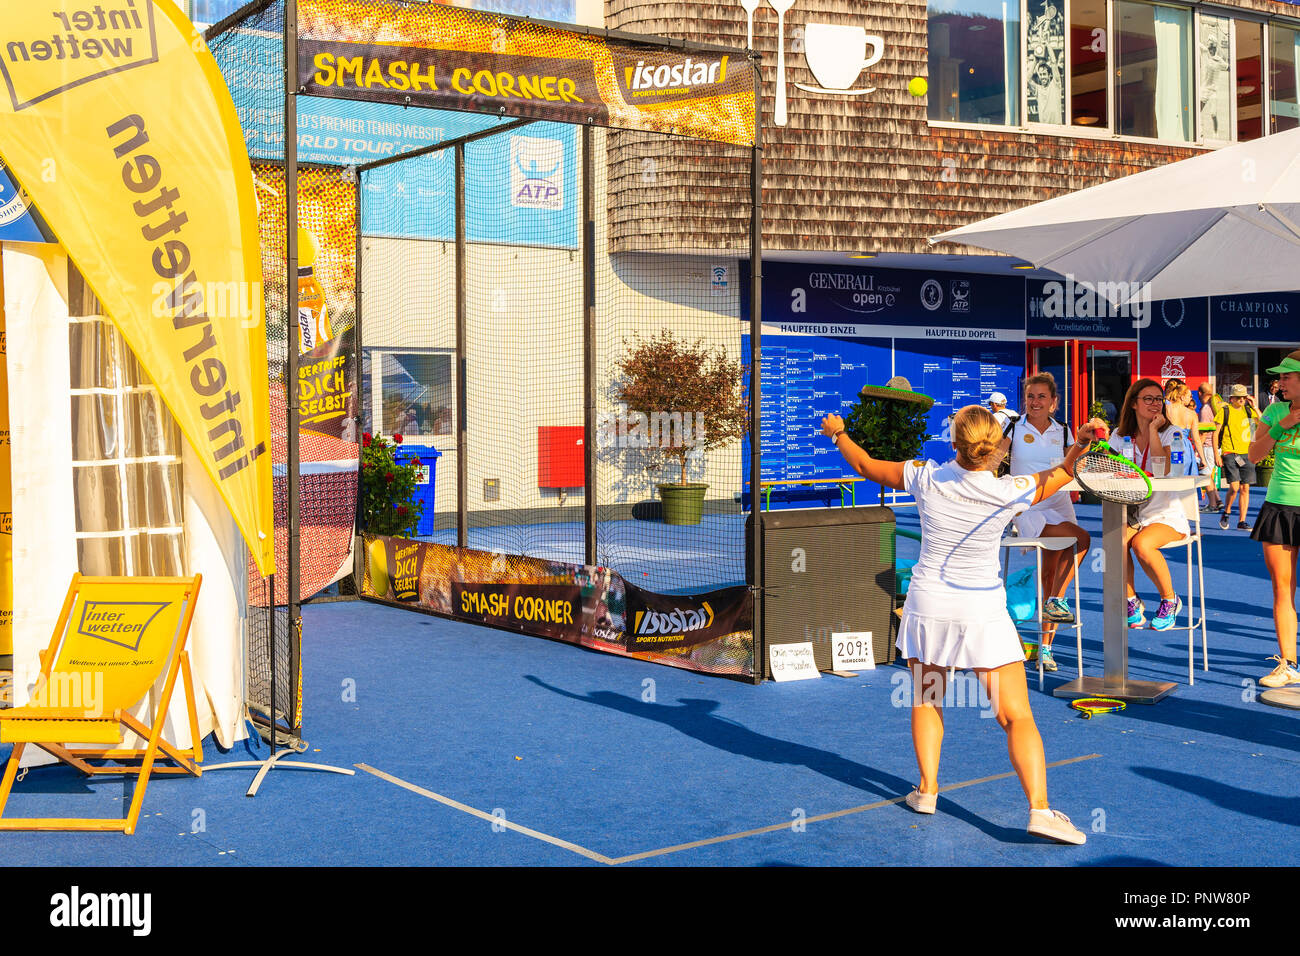 KITZBUHEL, AUTRICHE - Aug 2, 2018 : Le tournoi de tennis en été en ville, Kitzbuhel Tirol. Ce concours est connu comme O autrichien Banque D'Images